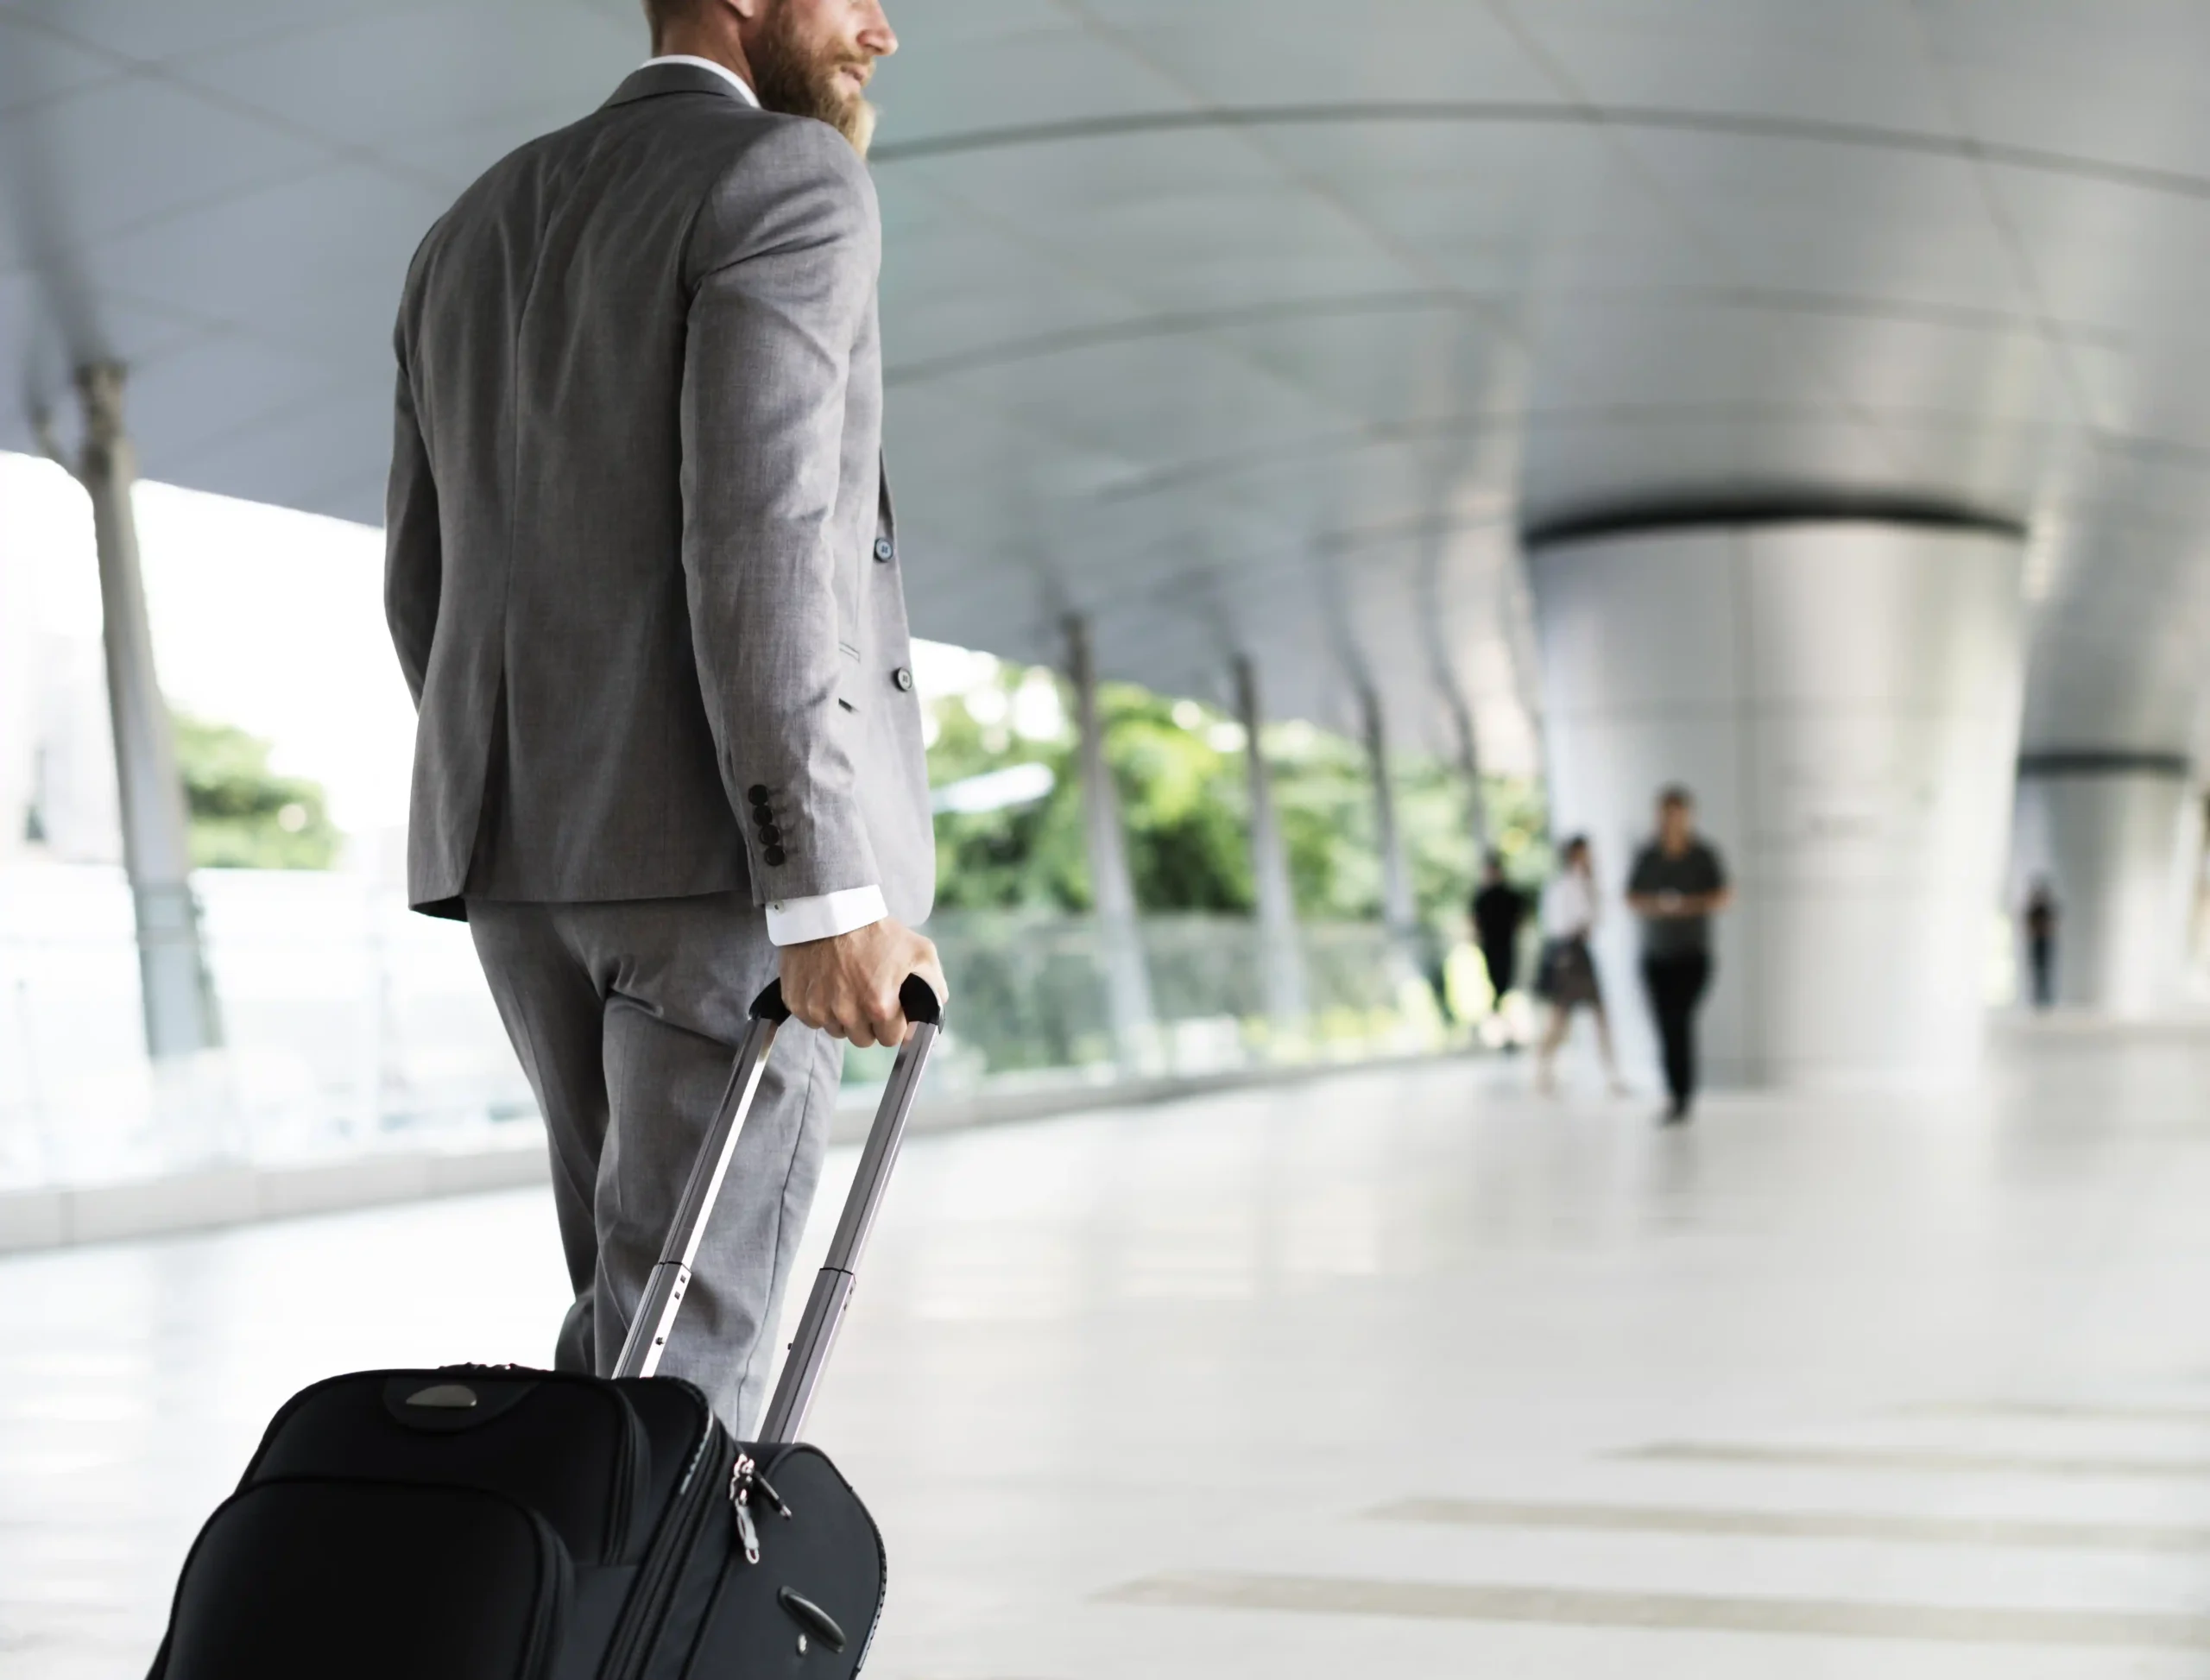 Nell'immagine si vede un uomo con abito elegante che trascina un trolley in un ambiente che ricorda quello di un aeroporto o una stazione. Sullo sfondo, si intravedono altre persone.